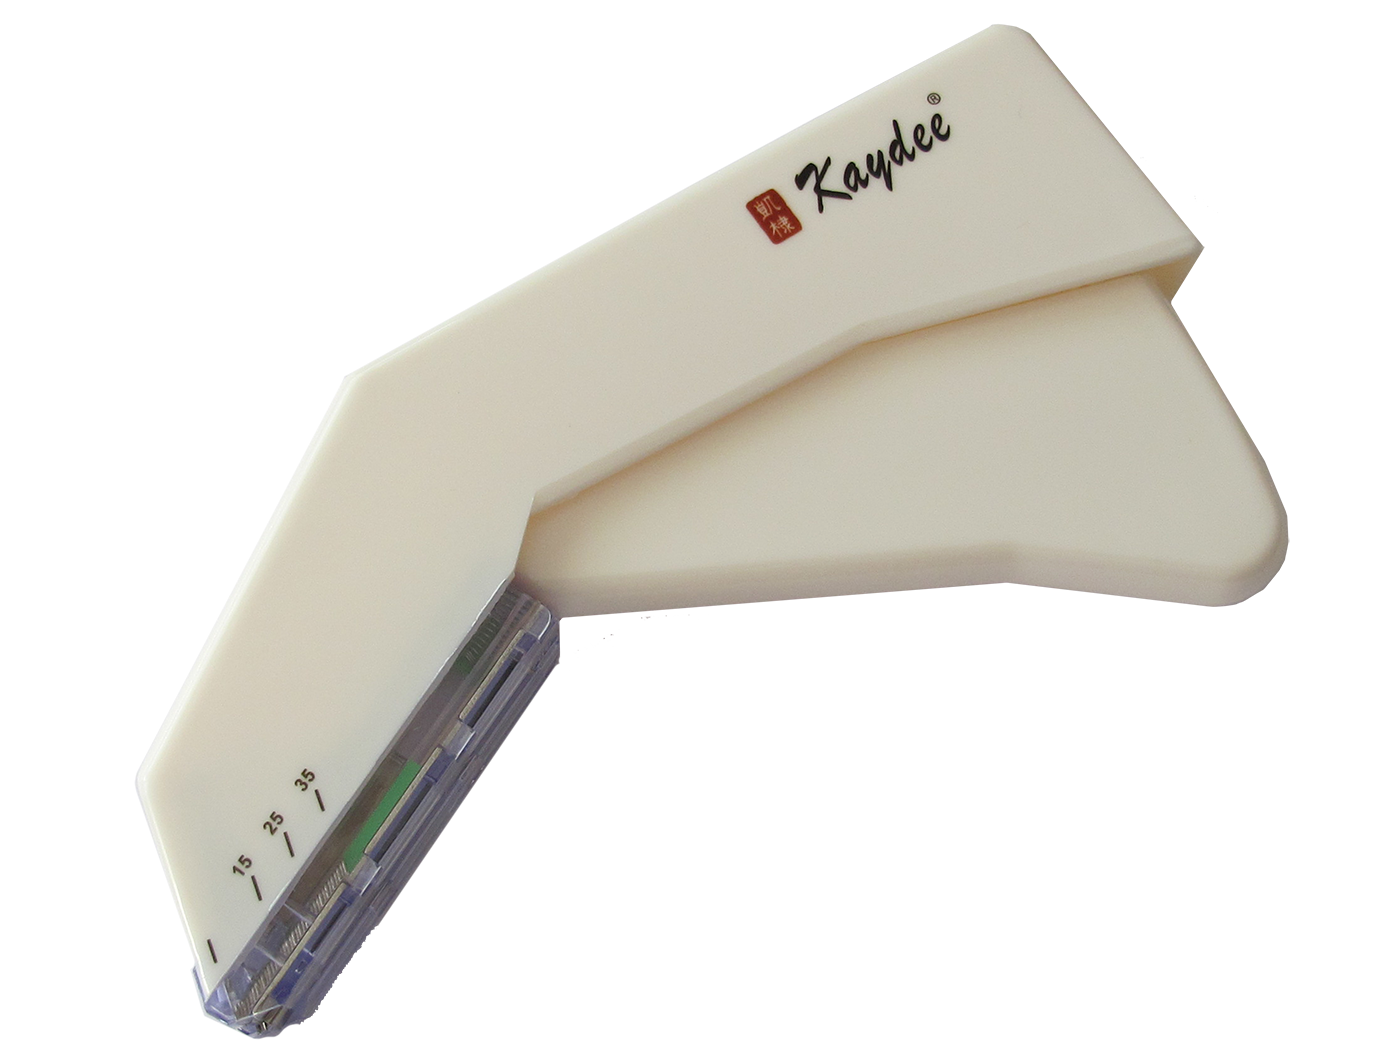 Disposable skin stapler Skin Stapler with magazine